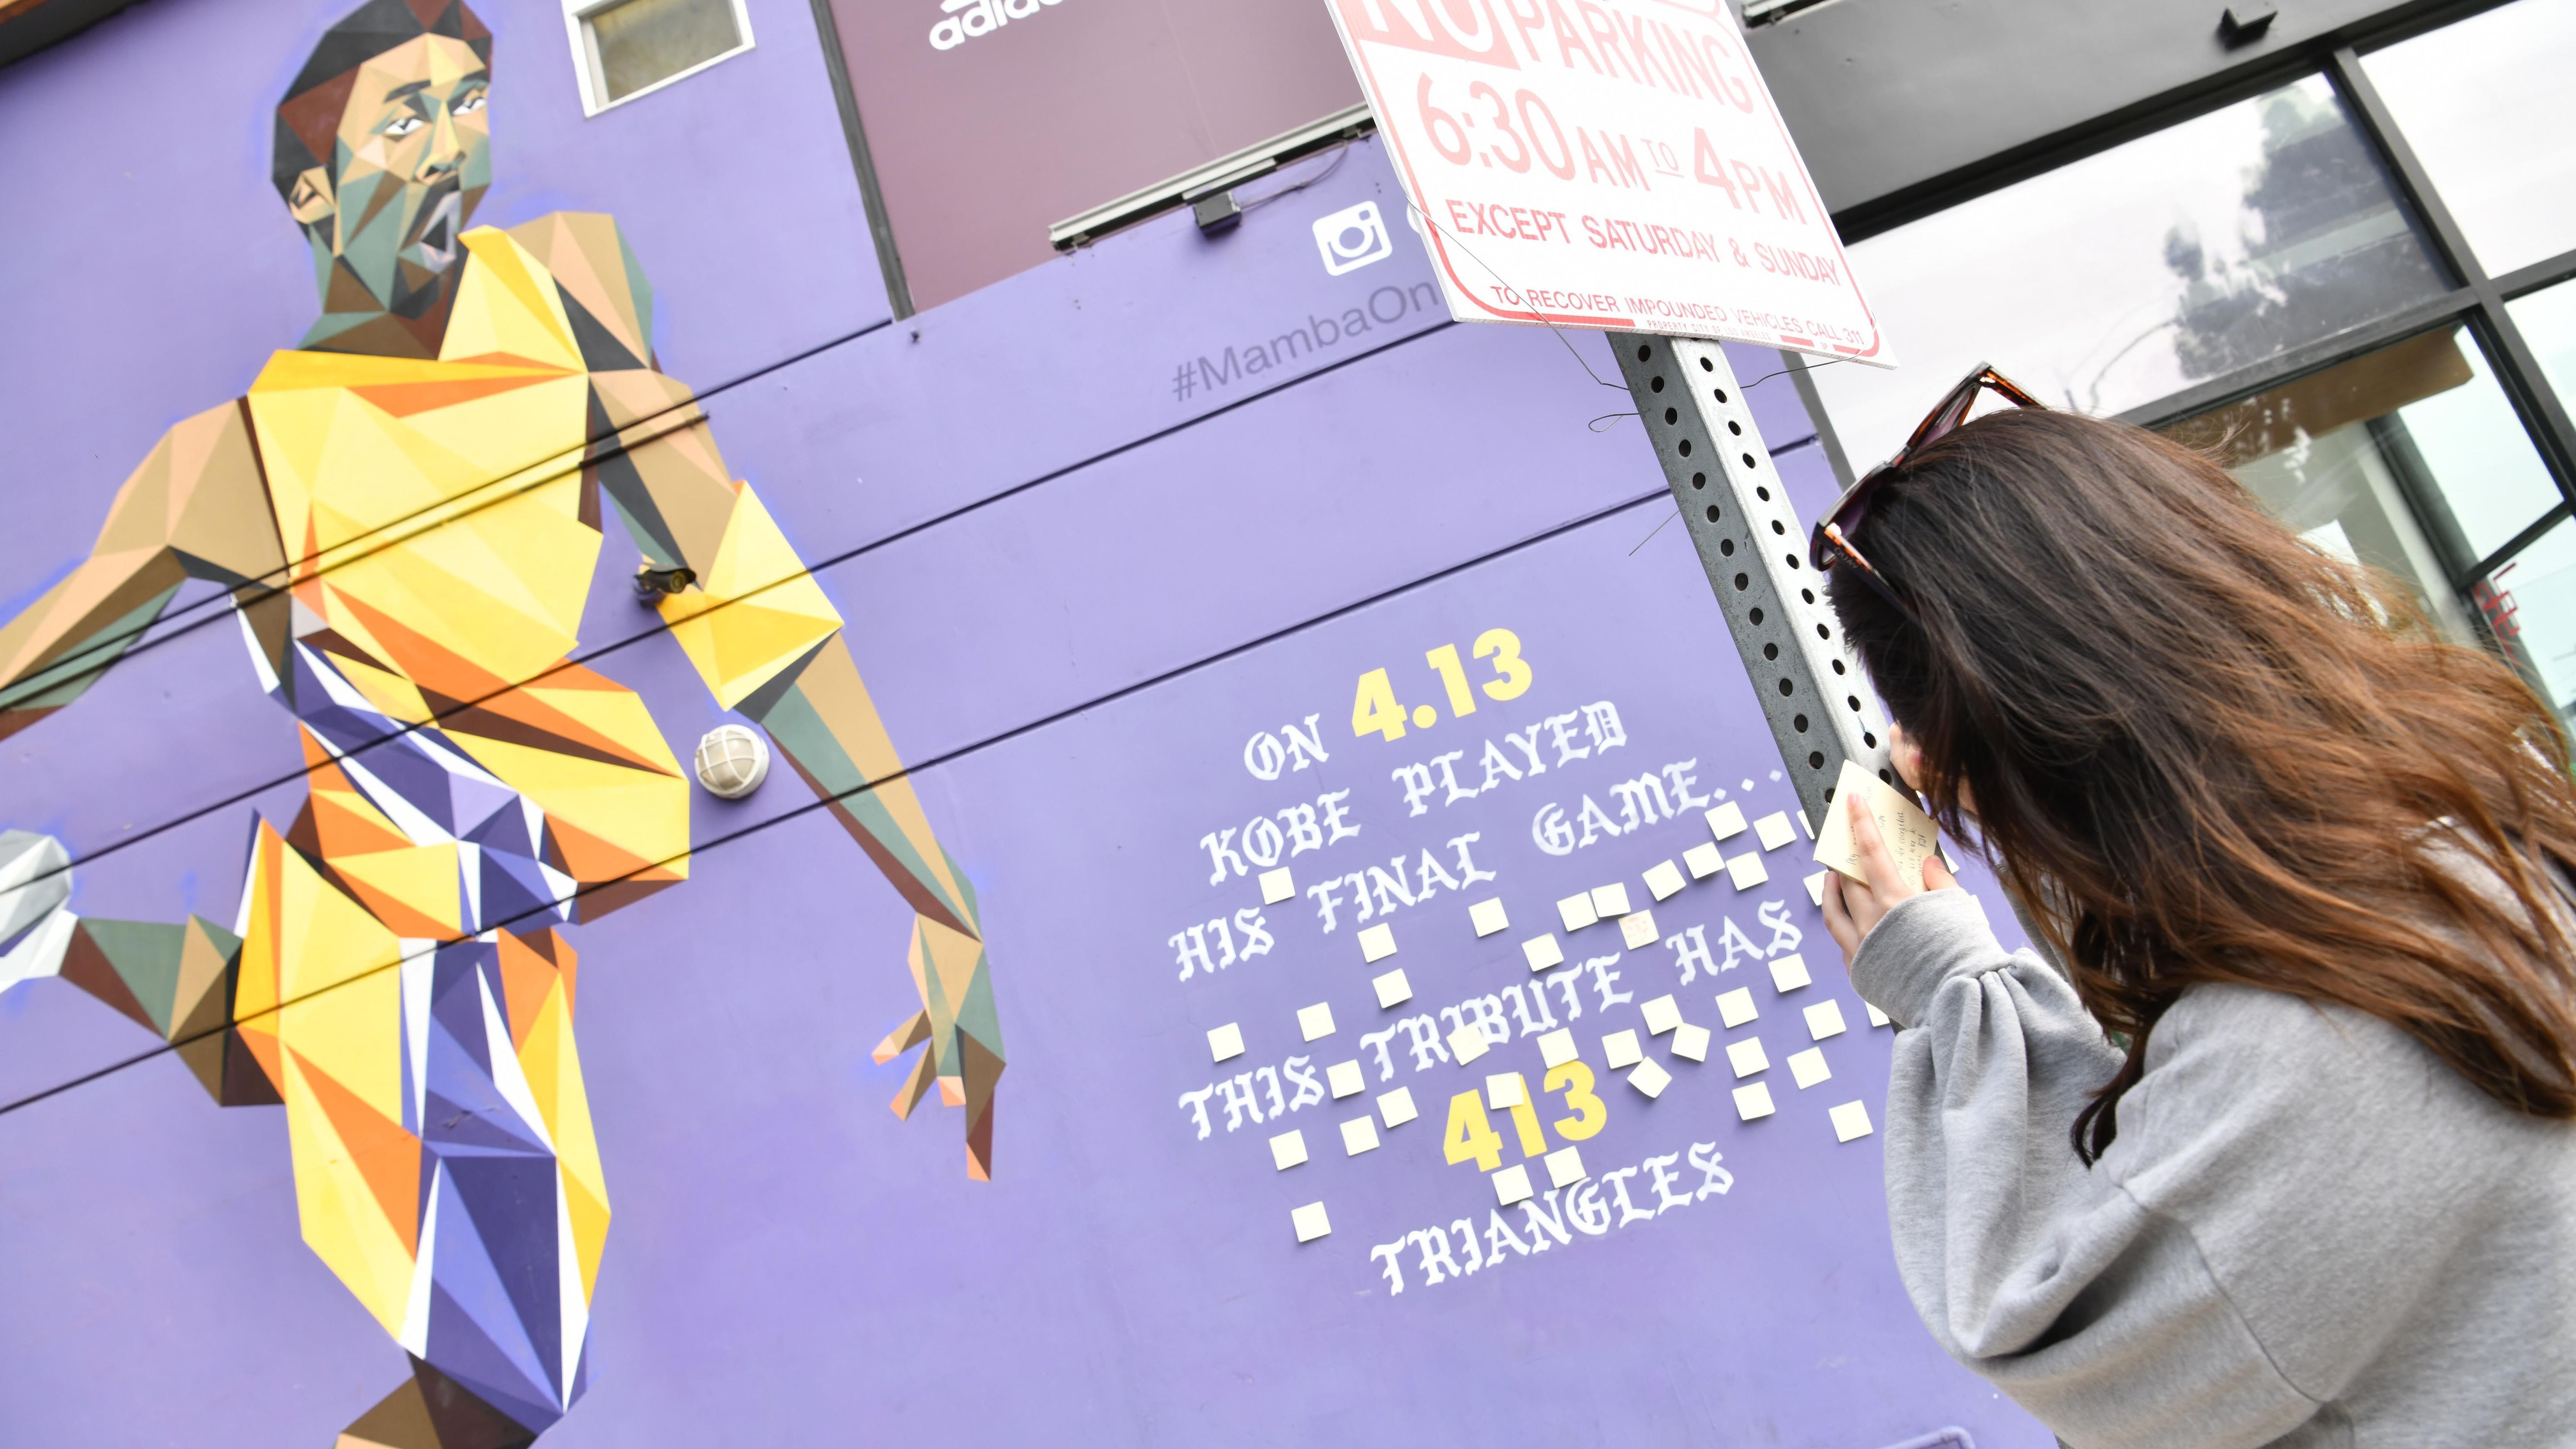 
                <strong>Fans an Kobe-Graffiti </strong><br>
                Los Angeles war jahrelang die Heimat von Kobe Bryant. Zwar wuchs er in Philadelphia auf, aus L.A. wird er jedoch nie wieder wegzudenken sein - das zeigen auch die zahlreichen Graffitis und Straßen-Kunstwerke, die in der ganzen Stadt zu sehen sind. Auch hier trauerten die Fans und schrieben Abschieds-Botschaften. 
              